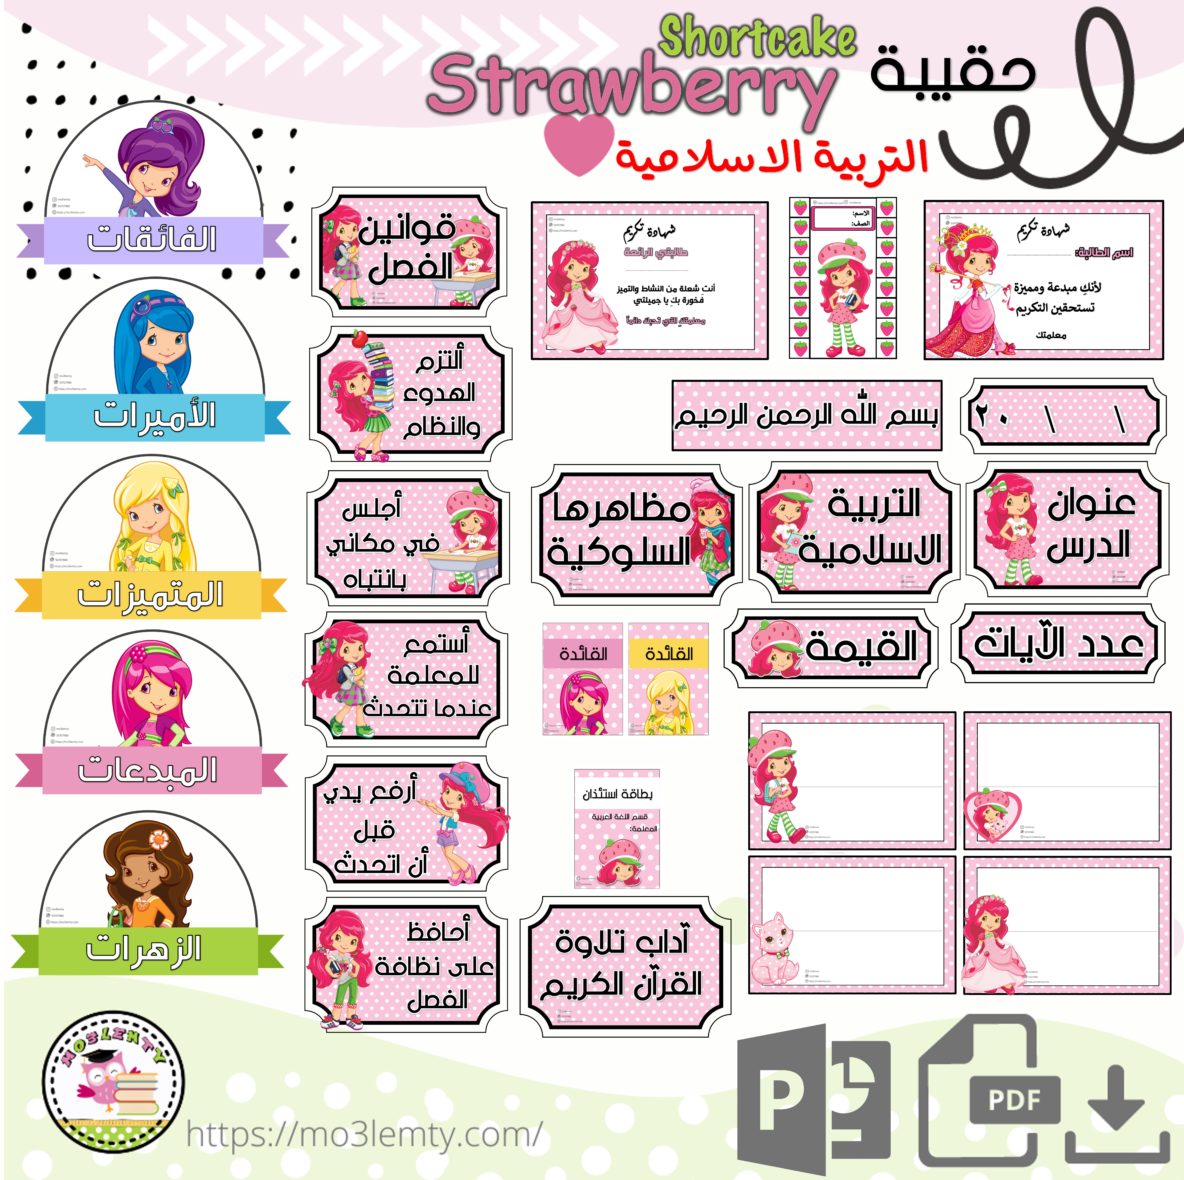 حقيبة التربية الاسلامية Strawberry shortcake-منتج رقمي